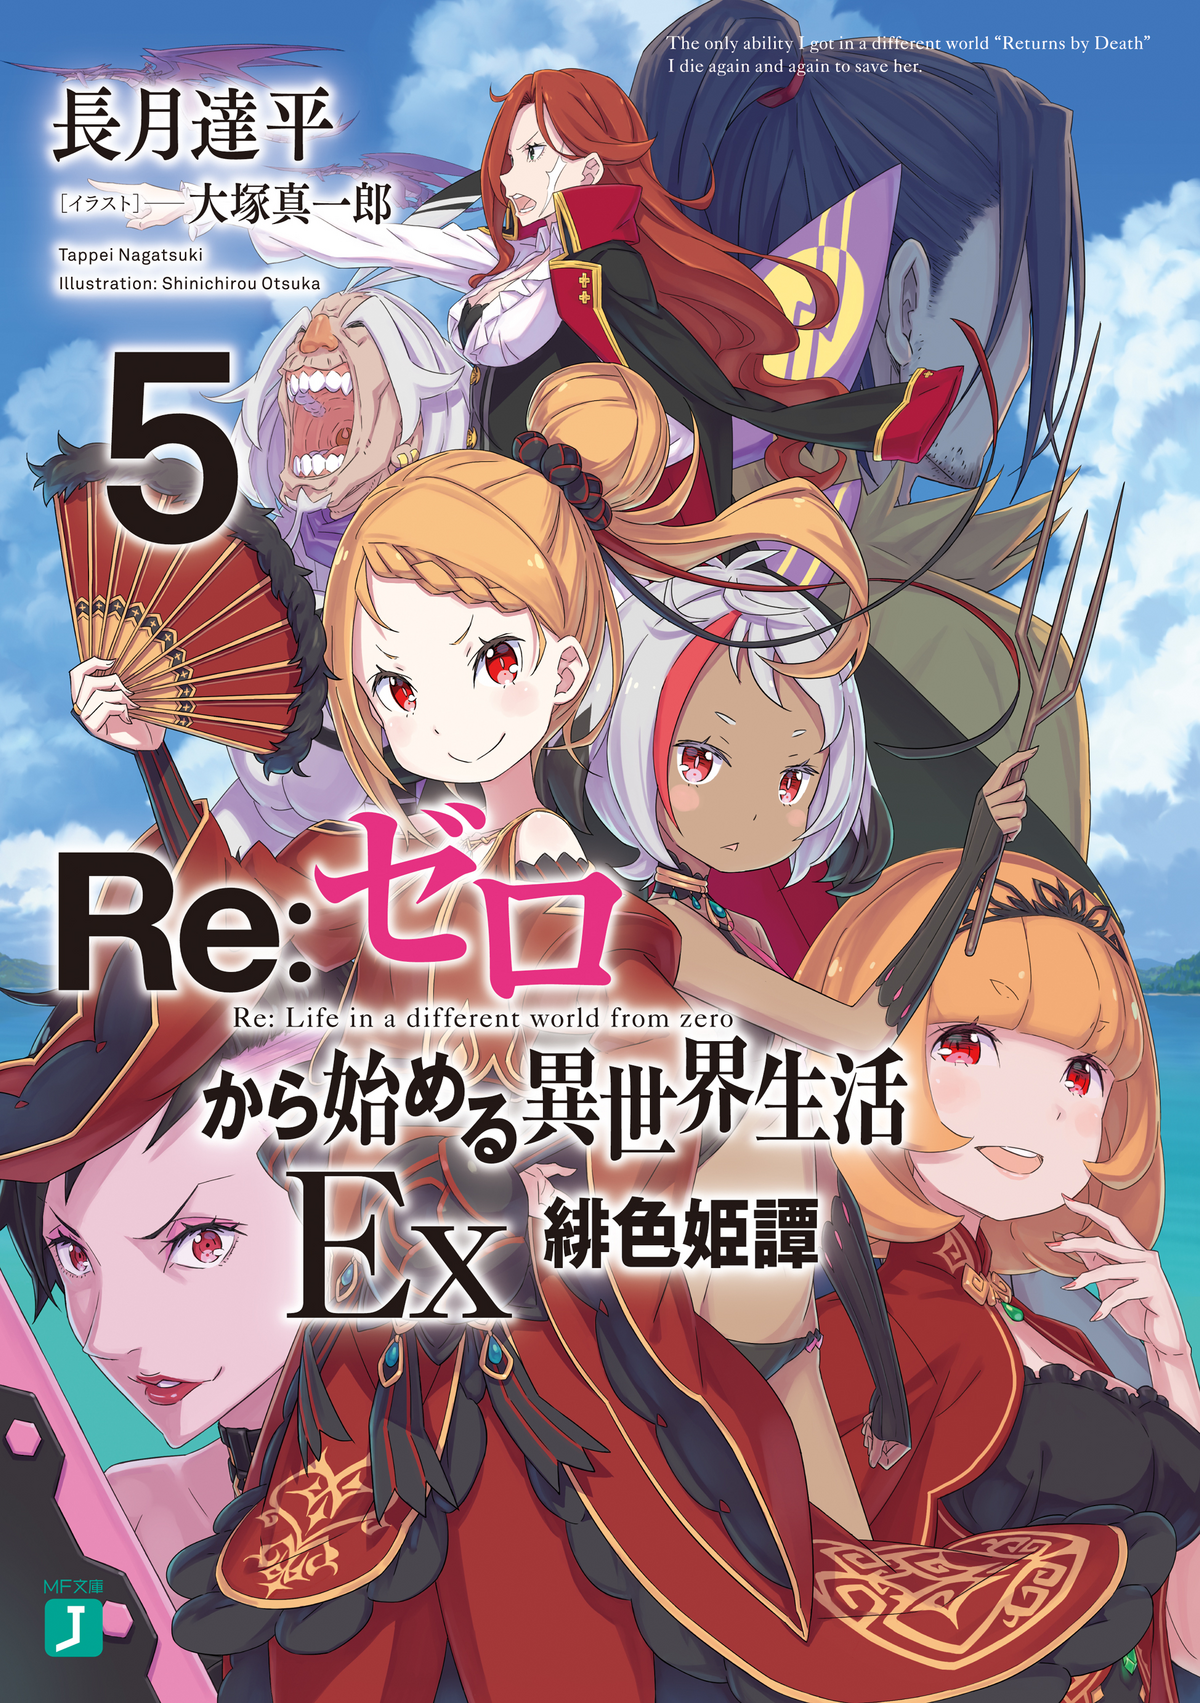 Re:Zero Light Novel Volume 5 Illustration!!! #rem #ferris #cruschkarst